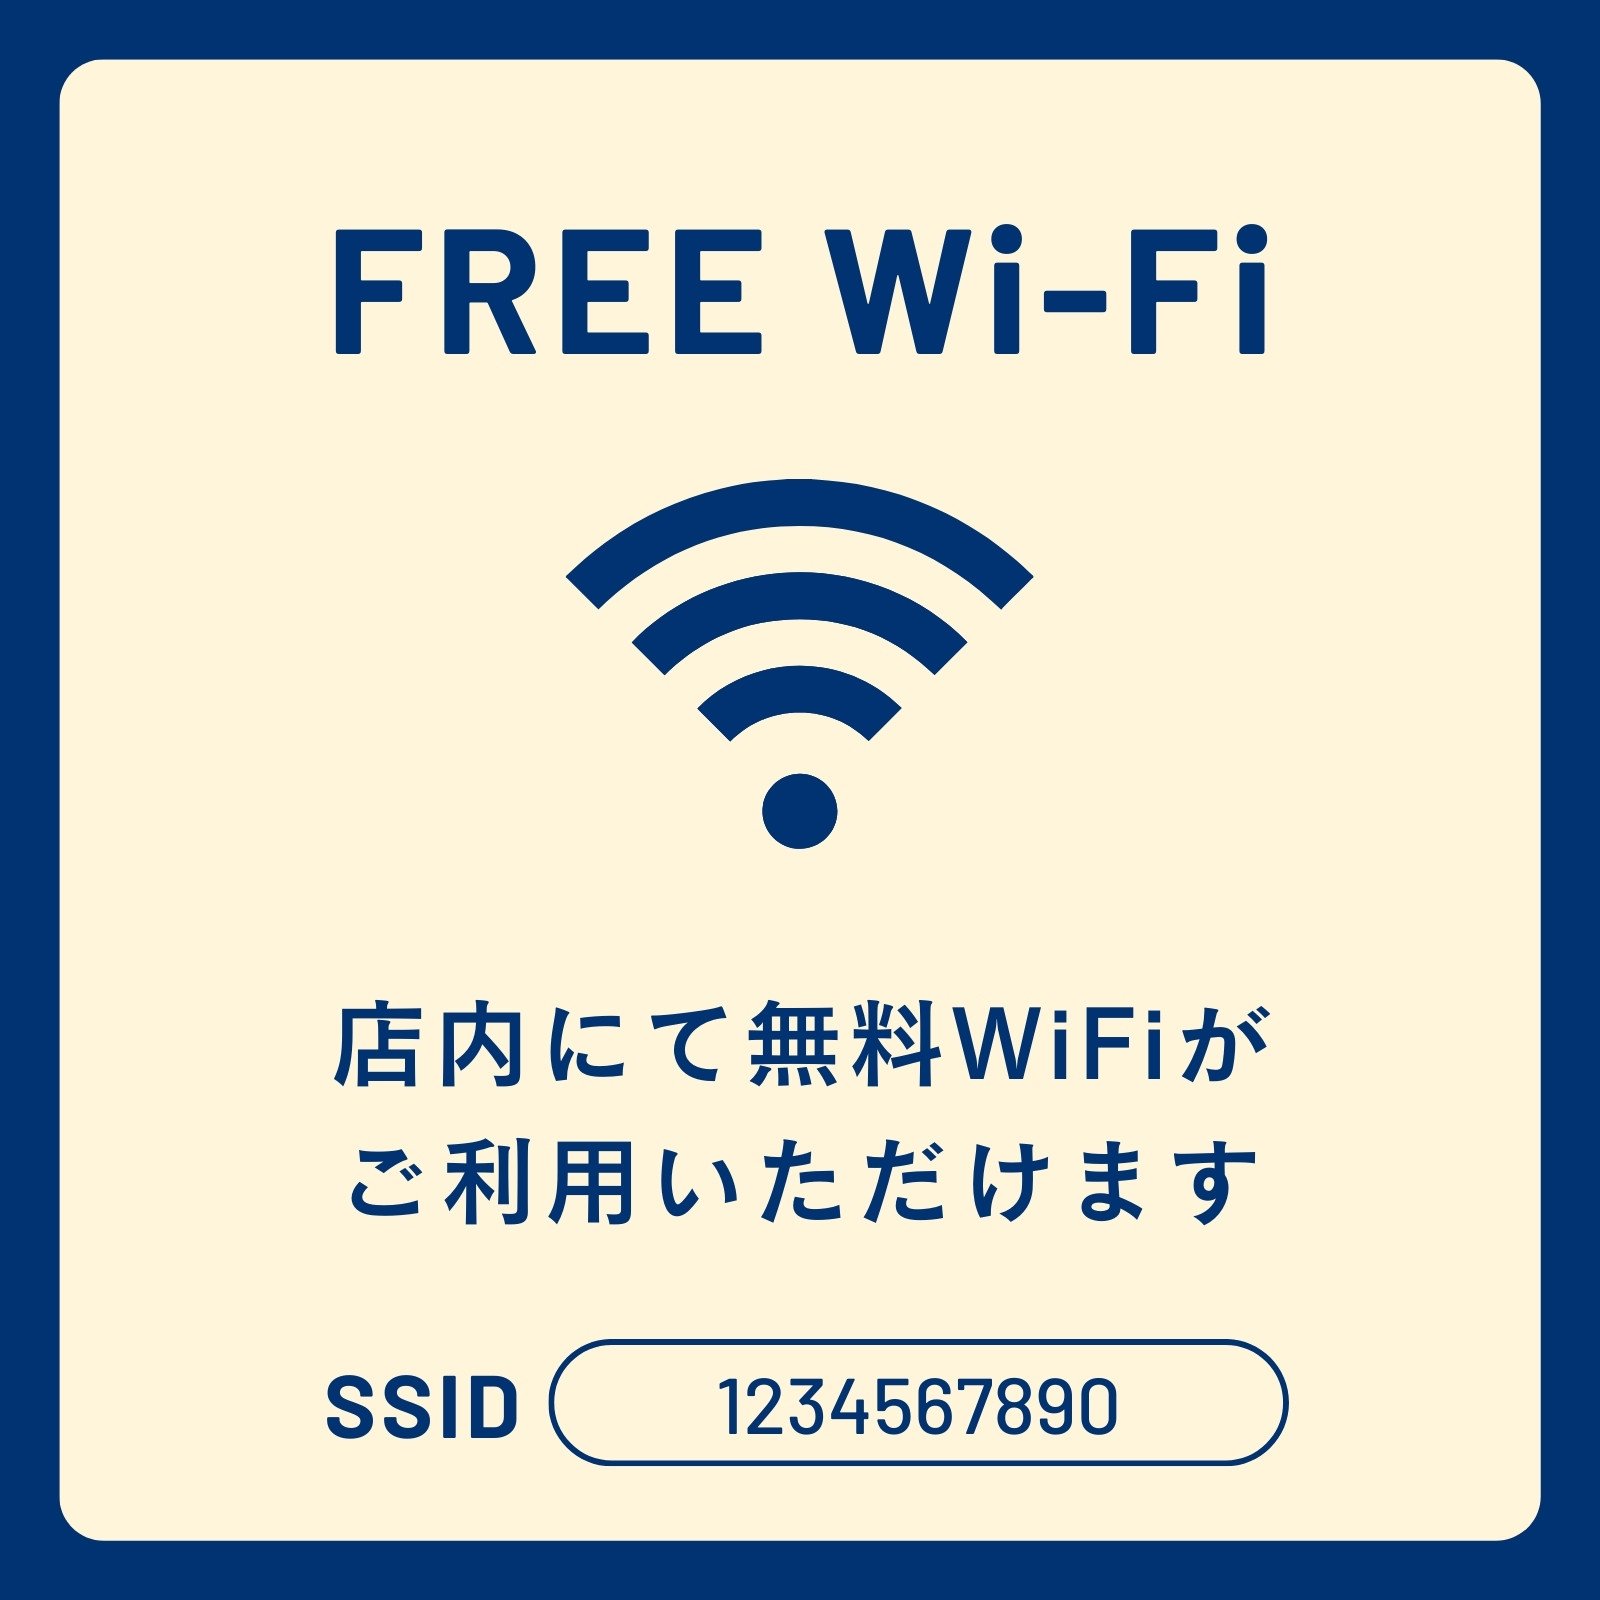 ベージュ ネイビー シンプル WiFi